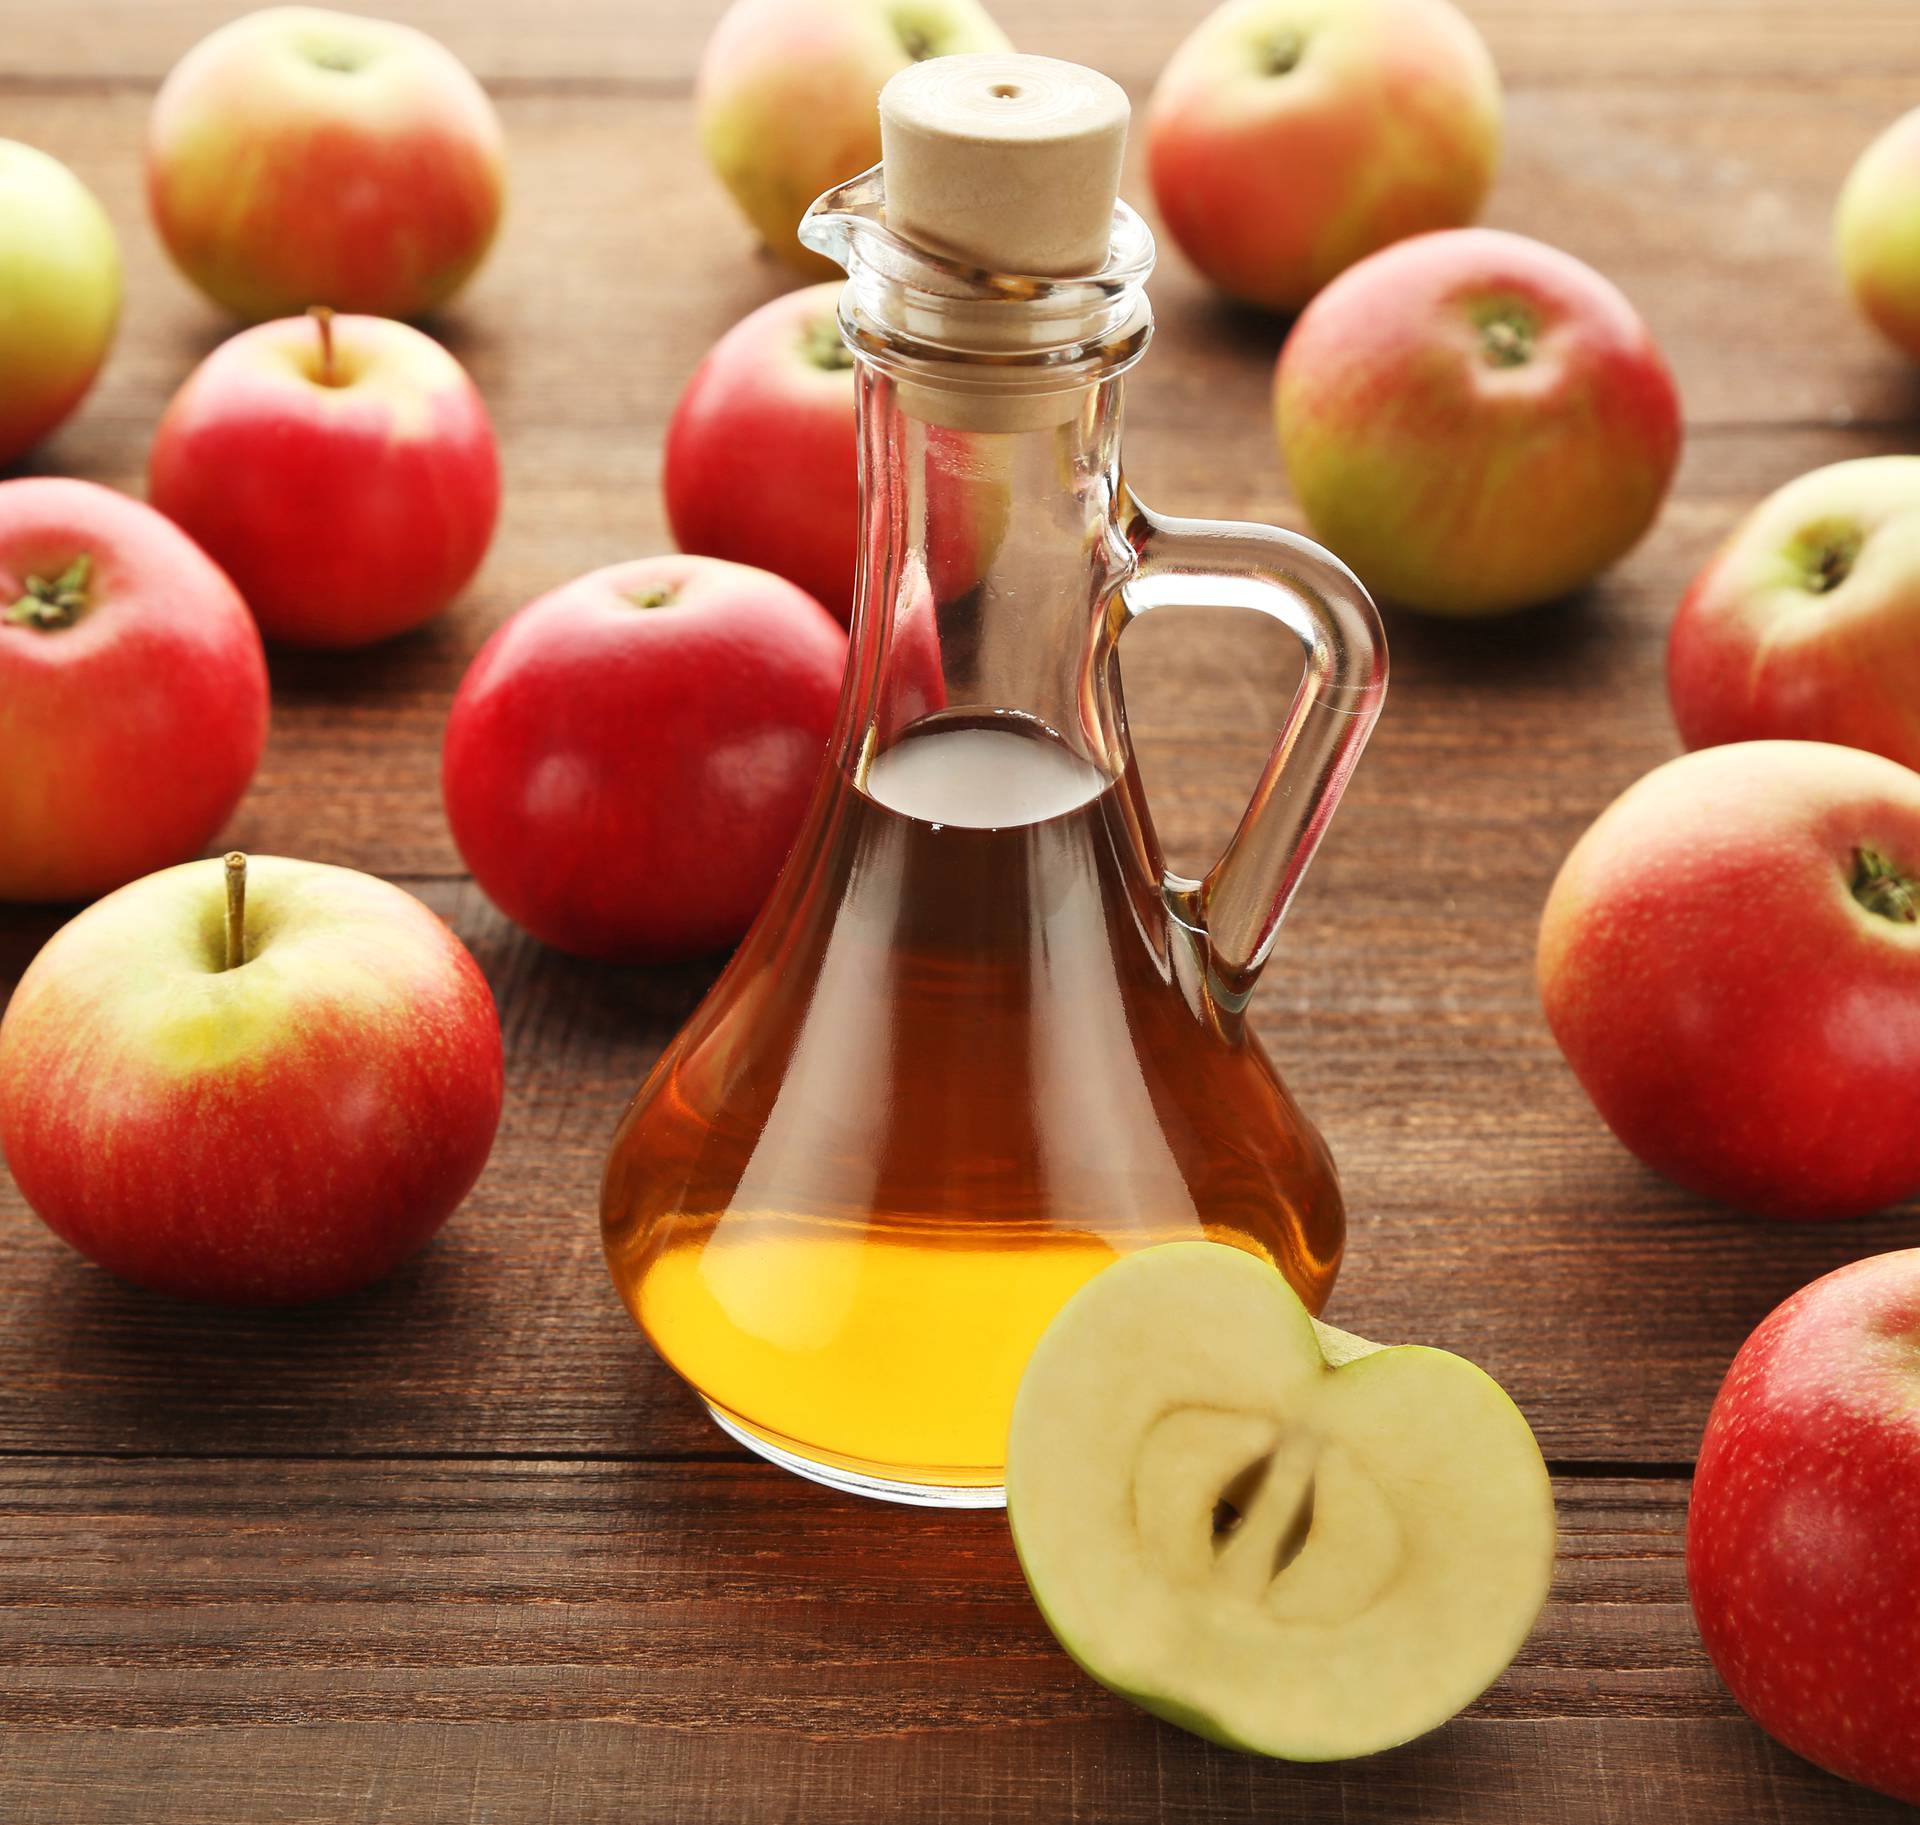 15 načina kako jabučni ocat rješava probleme sa zdravljem